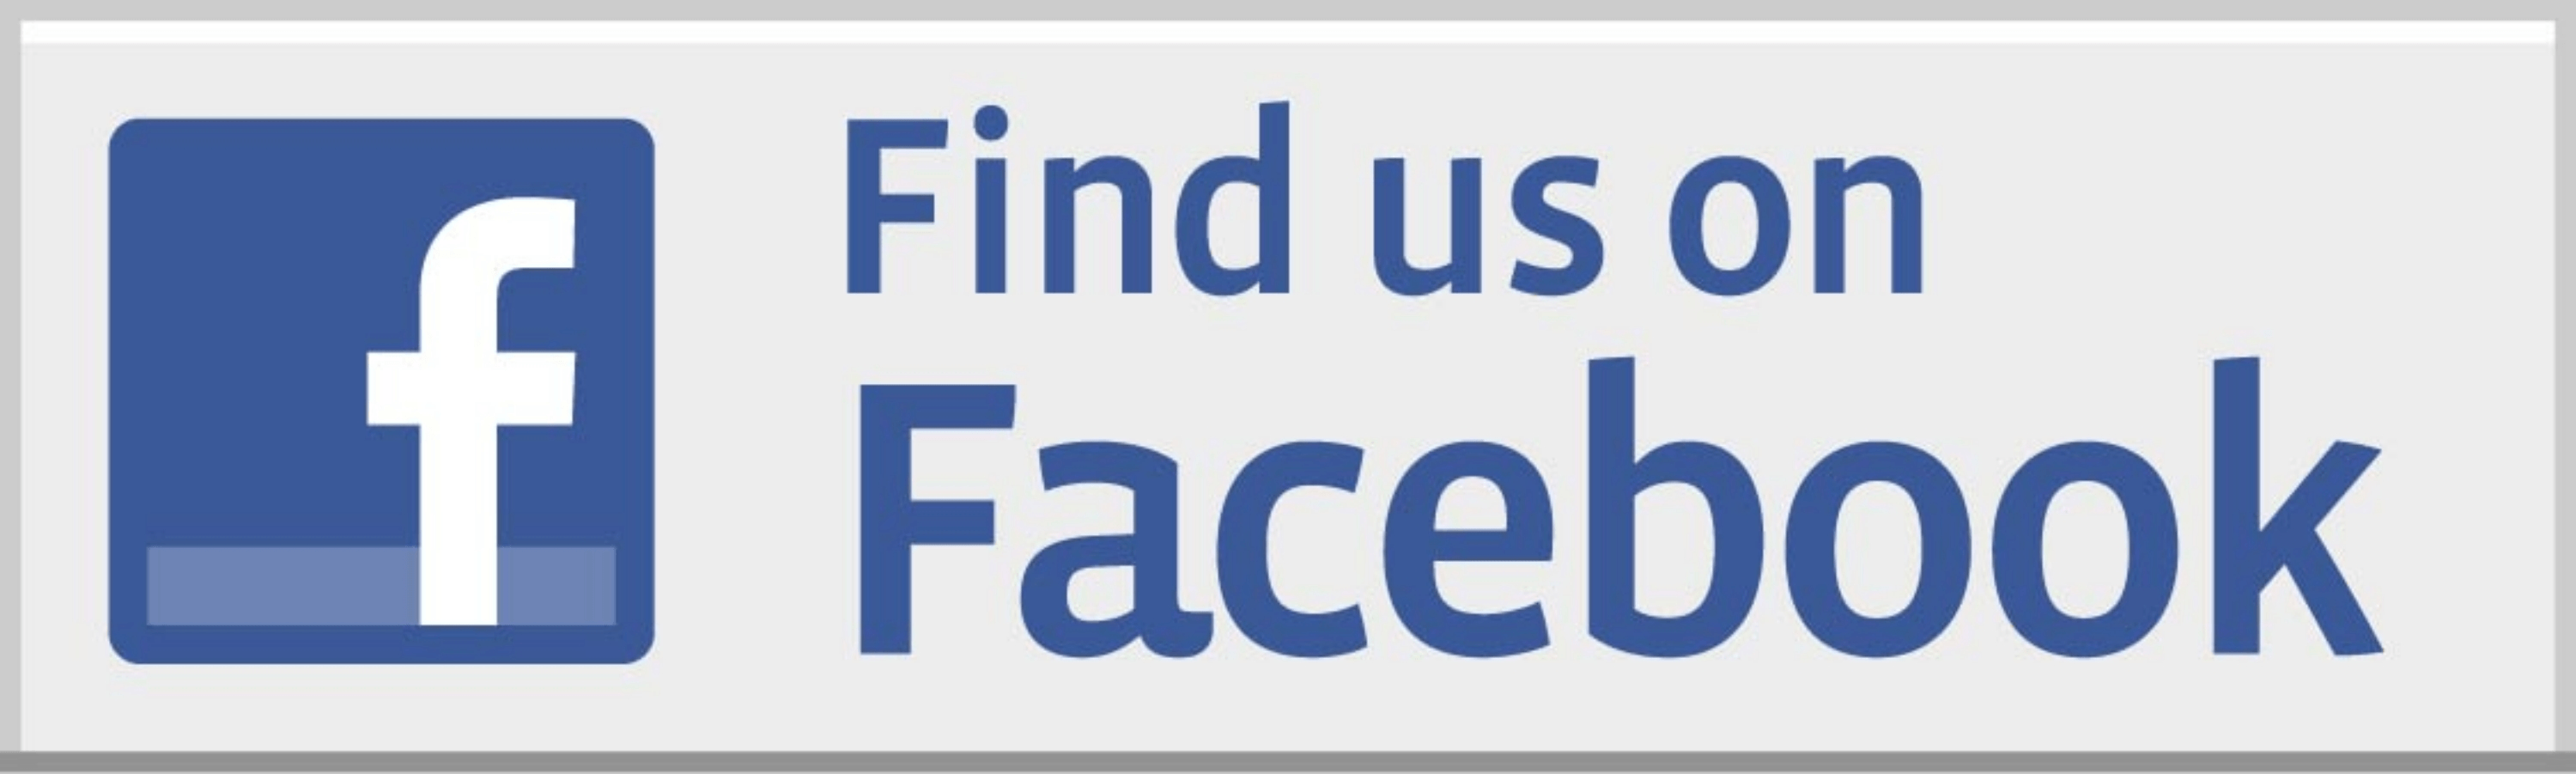 Follow Us On Facebook Logo - Facebook Logo